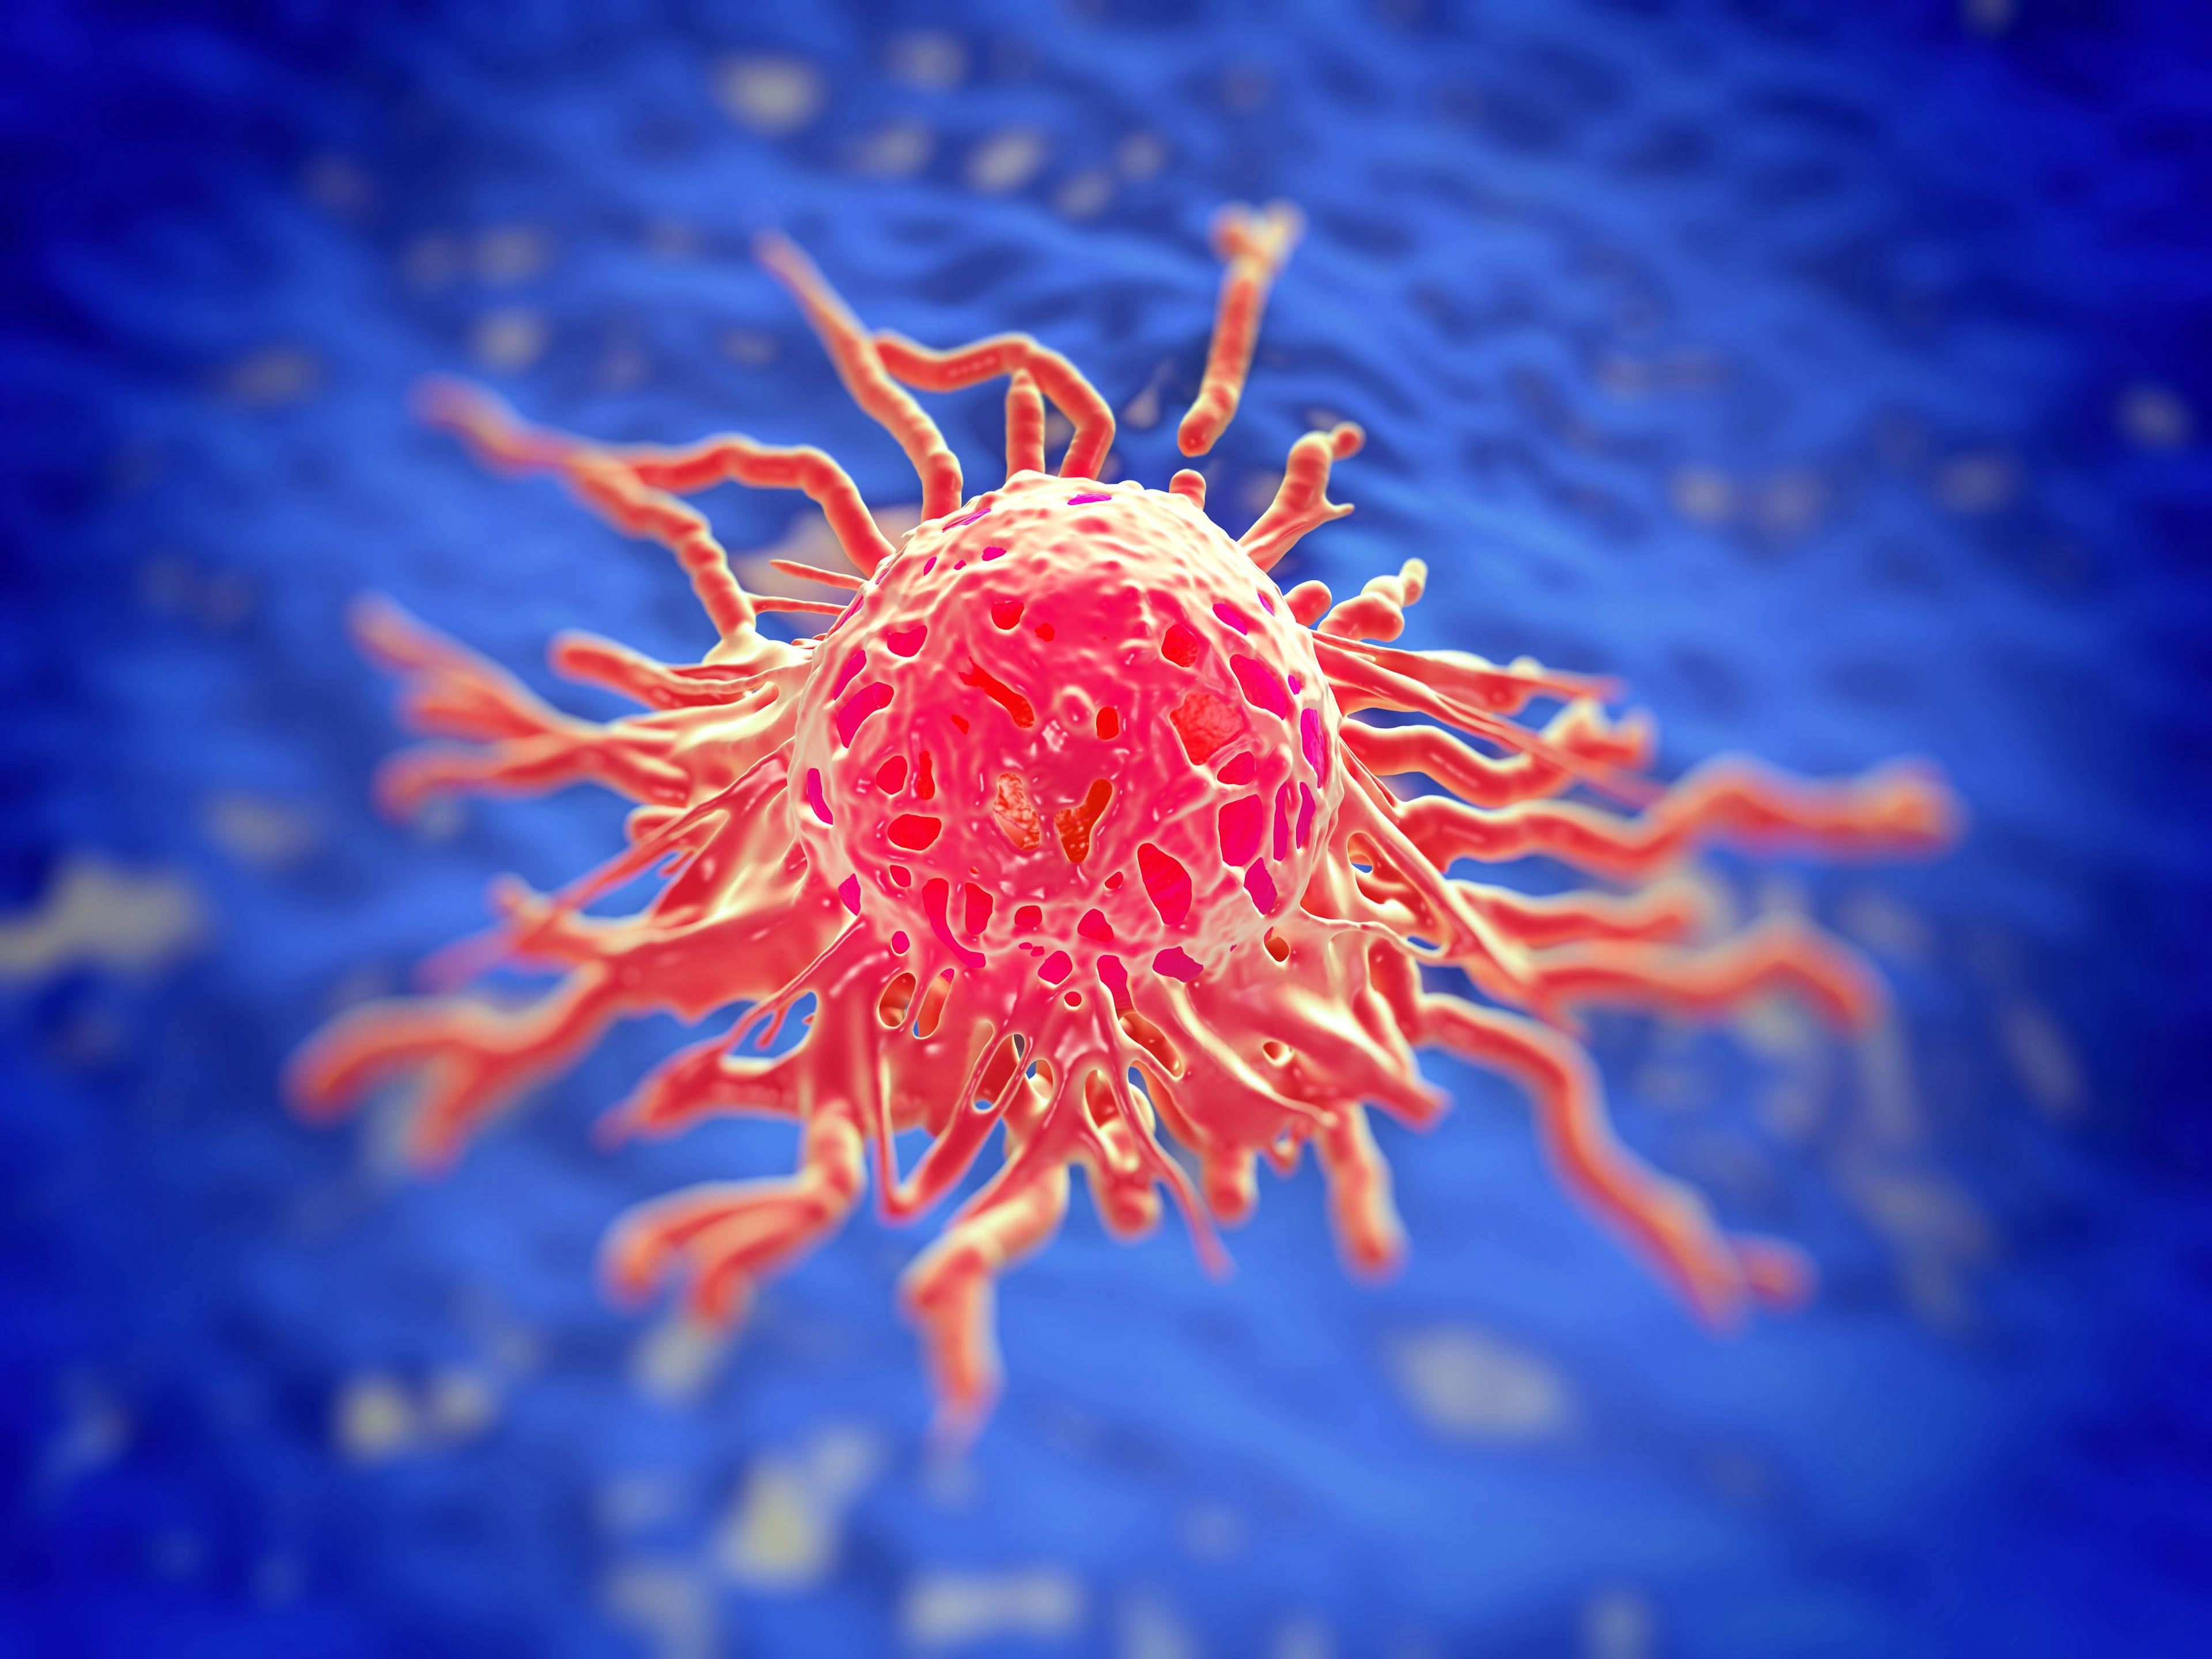 Cervical cancer cell, SEM of Cervical Carcinoma | Image Credit: © PRB ARTS - www.stock.adobe.com